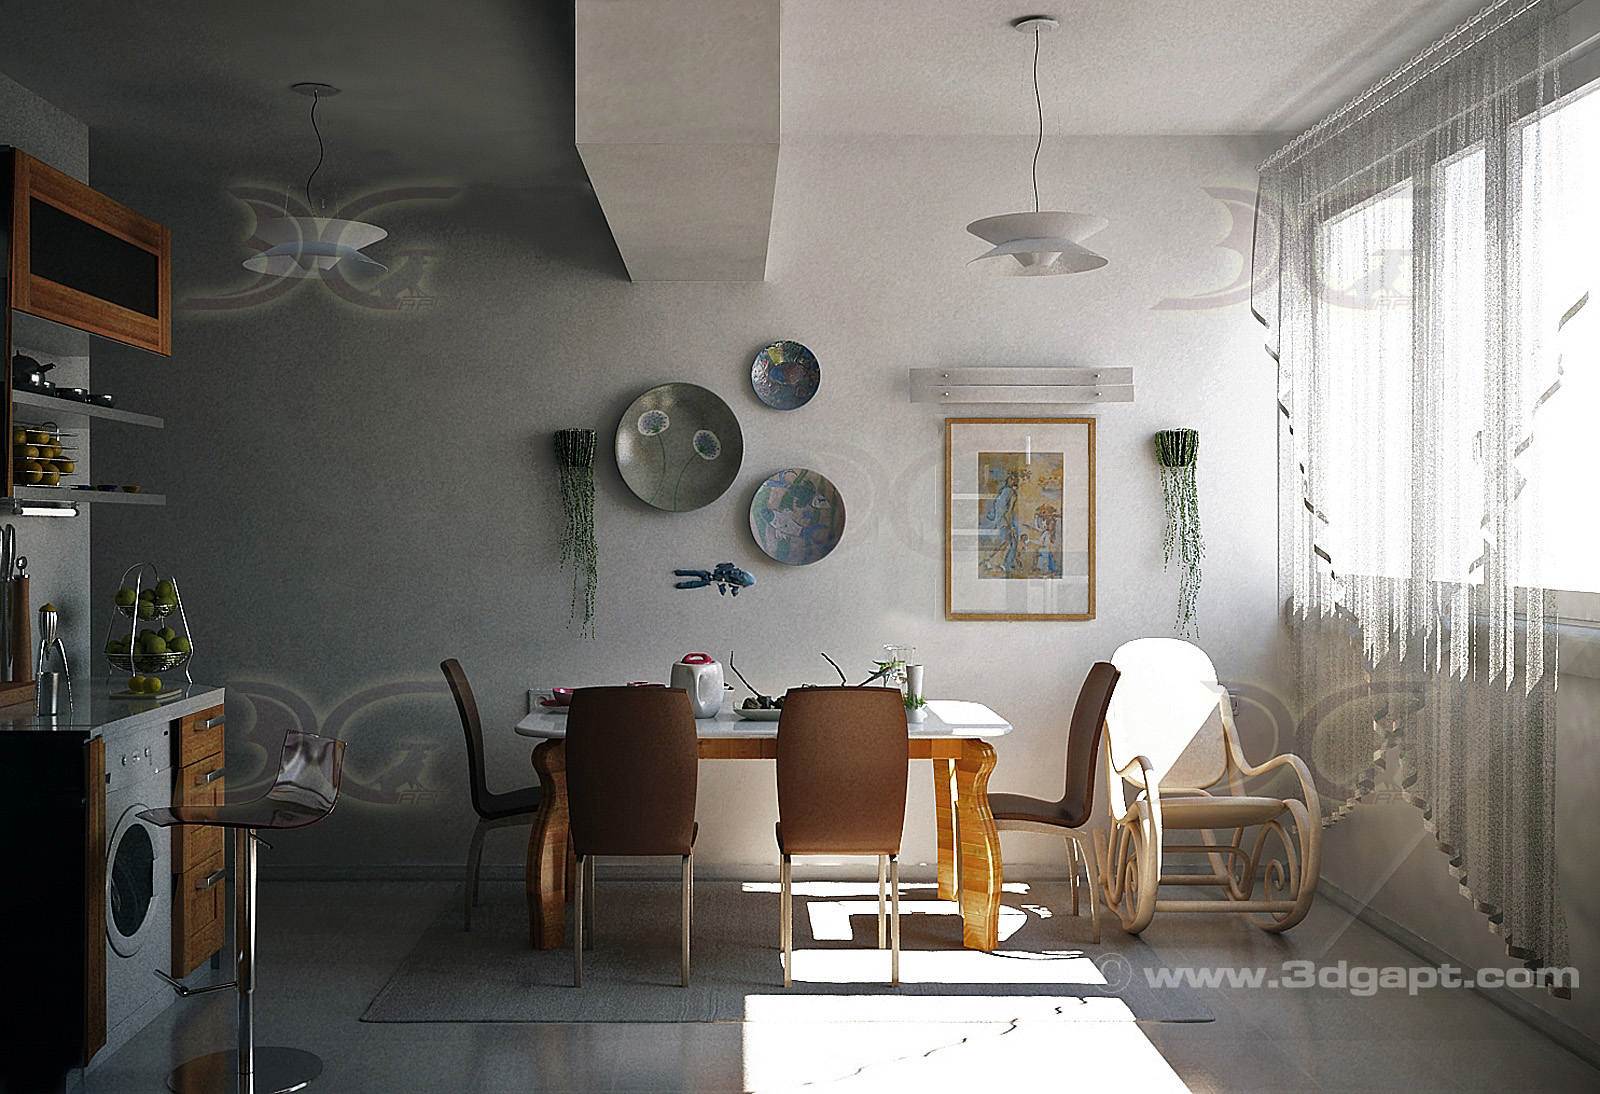 architecture interior kitchen-3versions 4